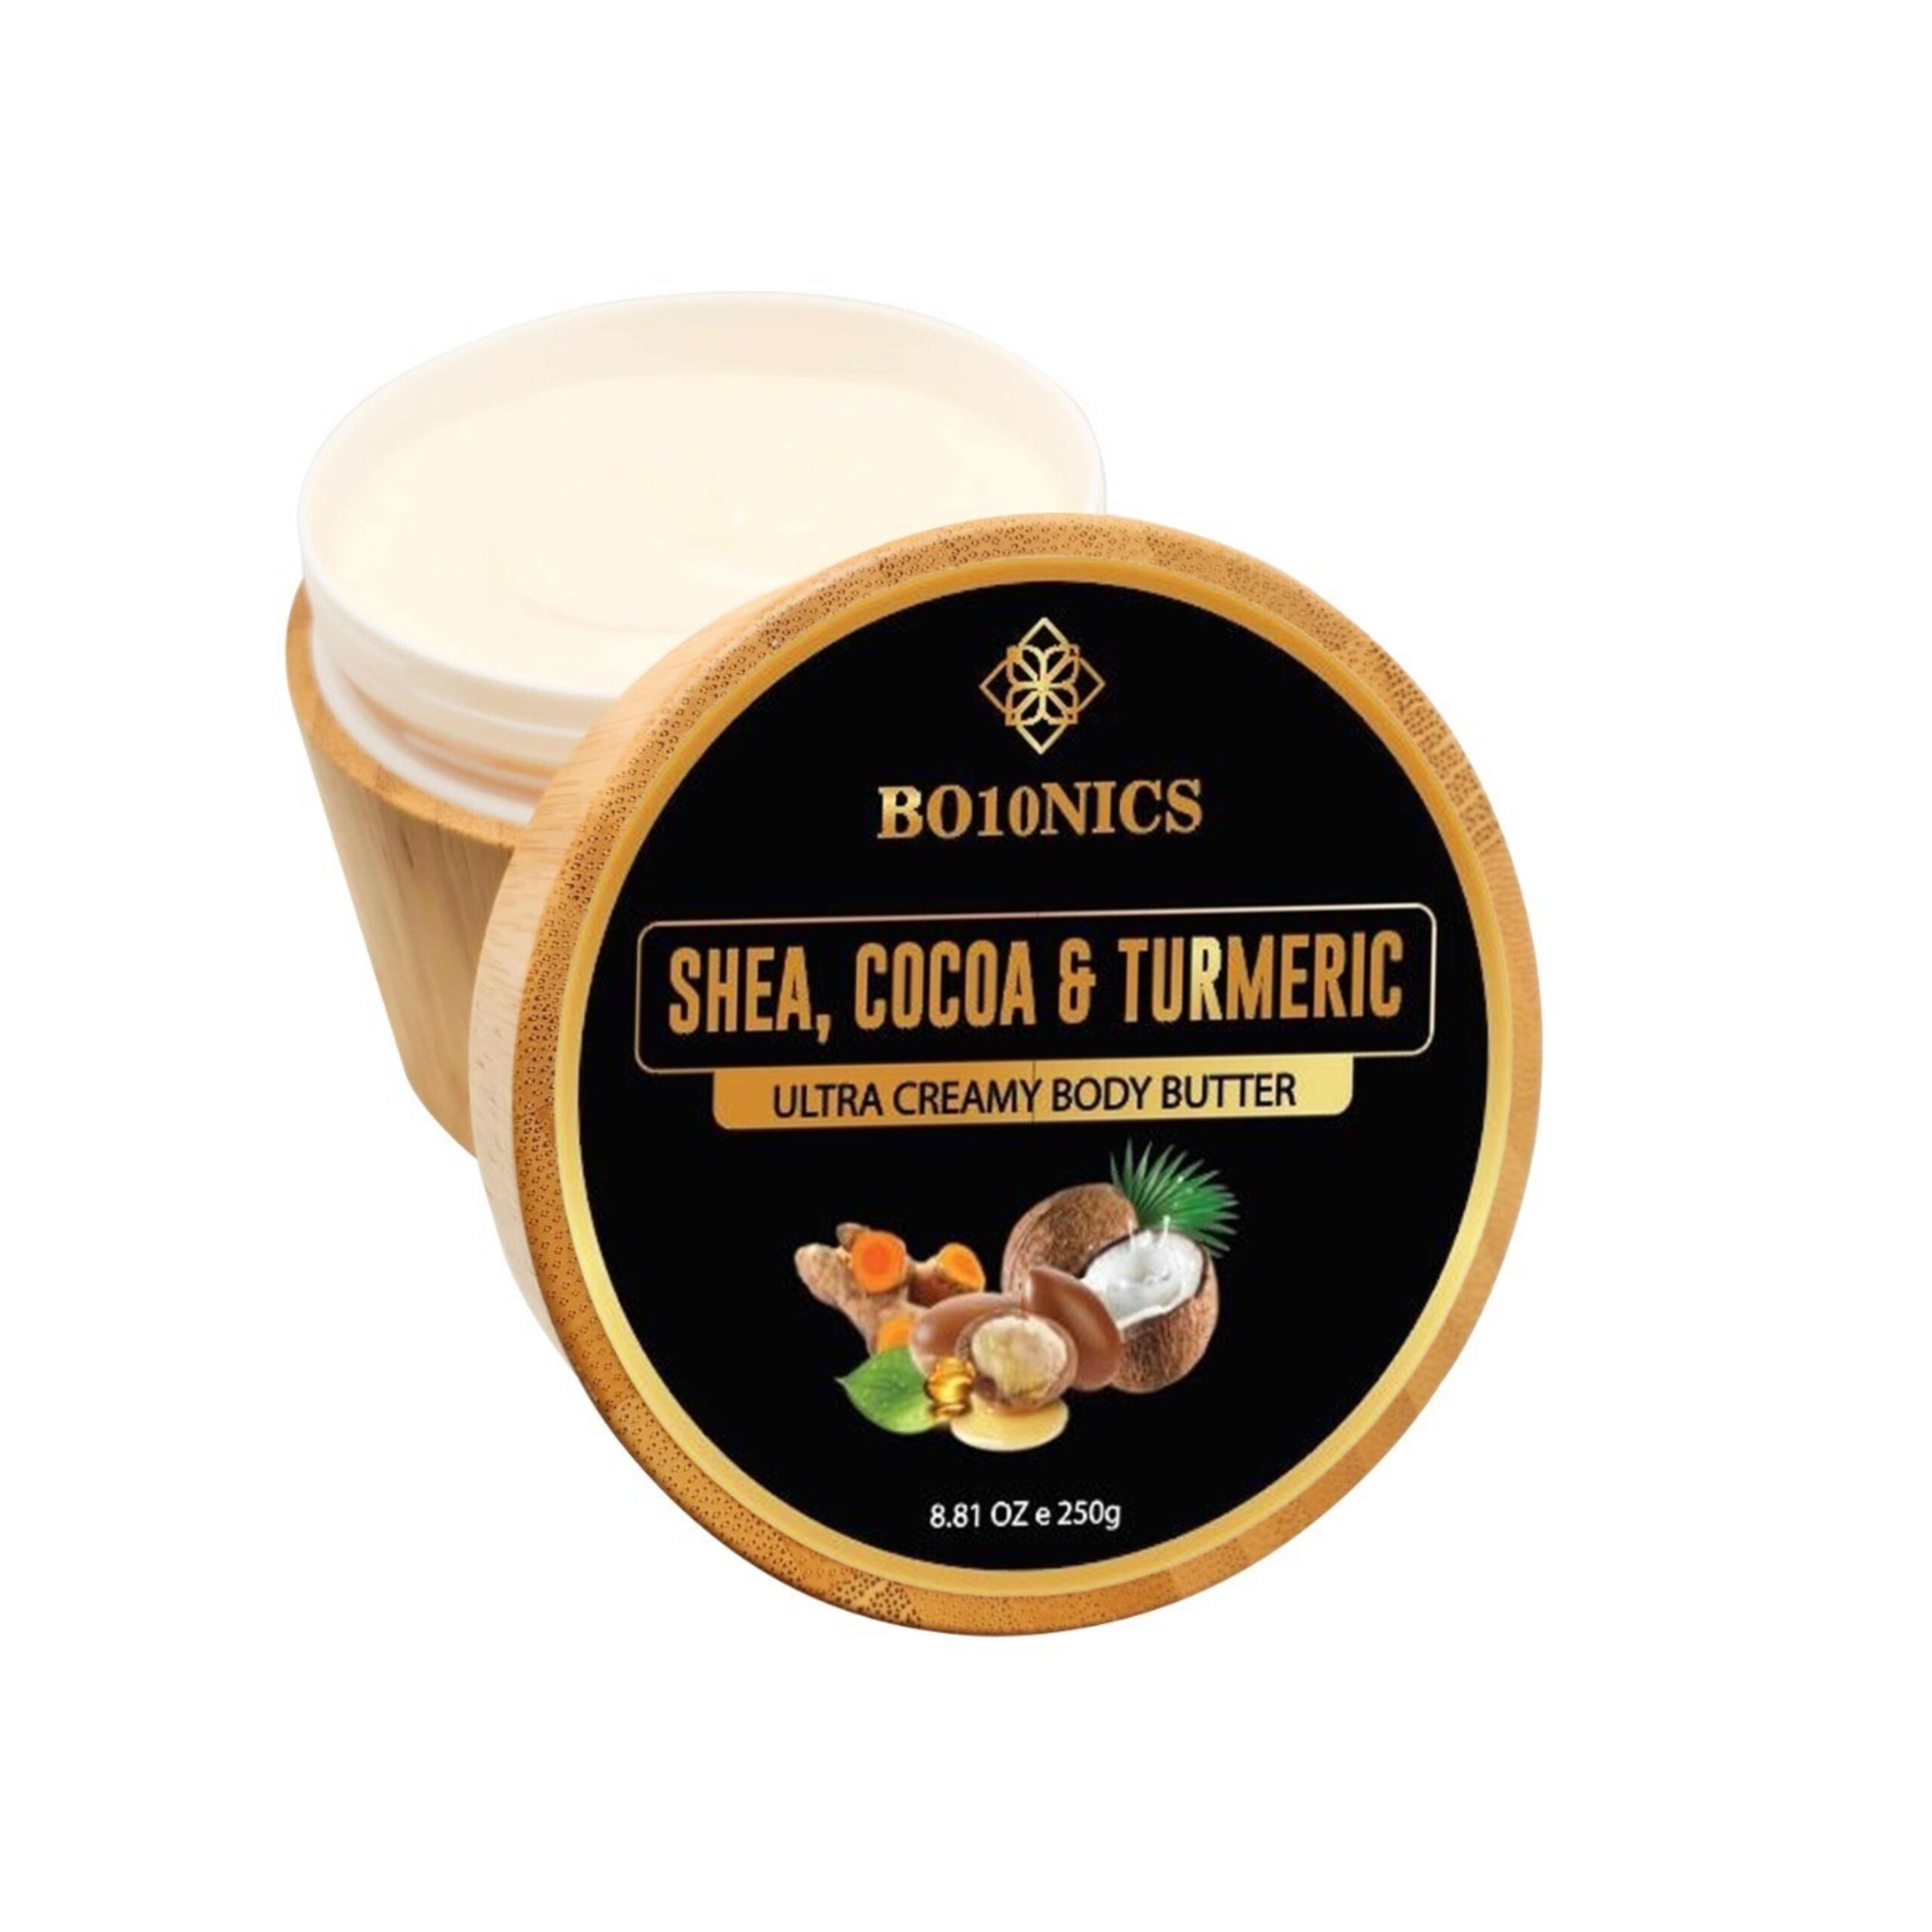 Shea, Cocoa & Turmeric Body Butter